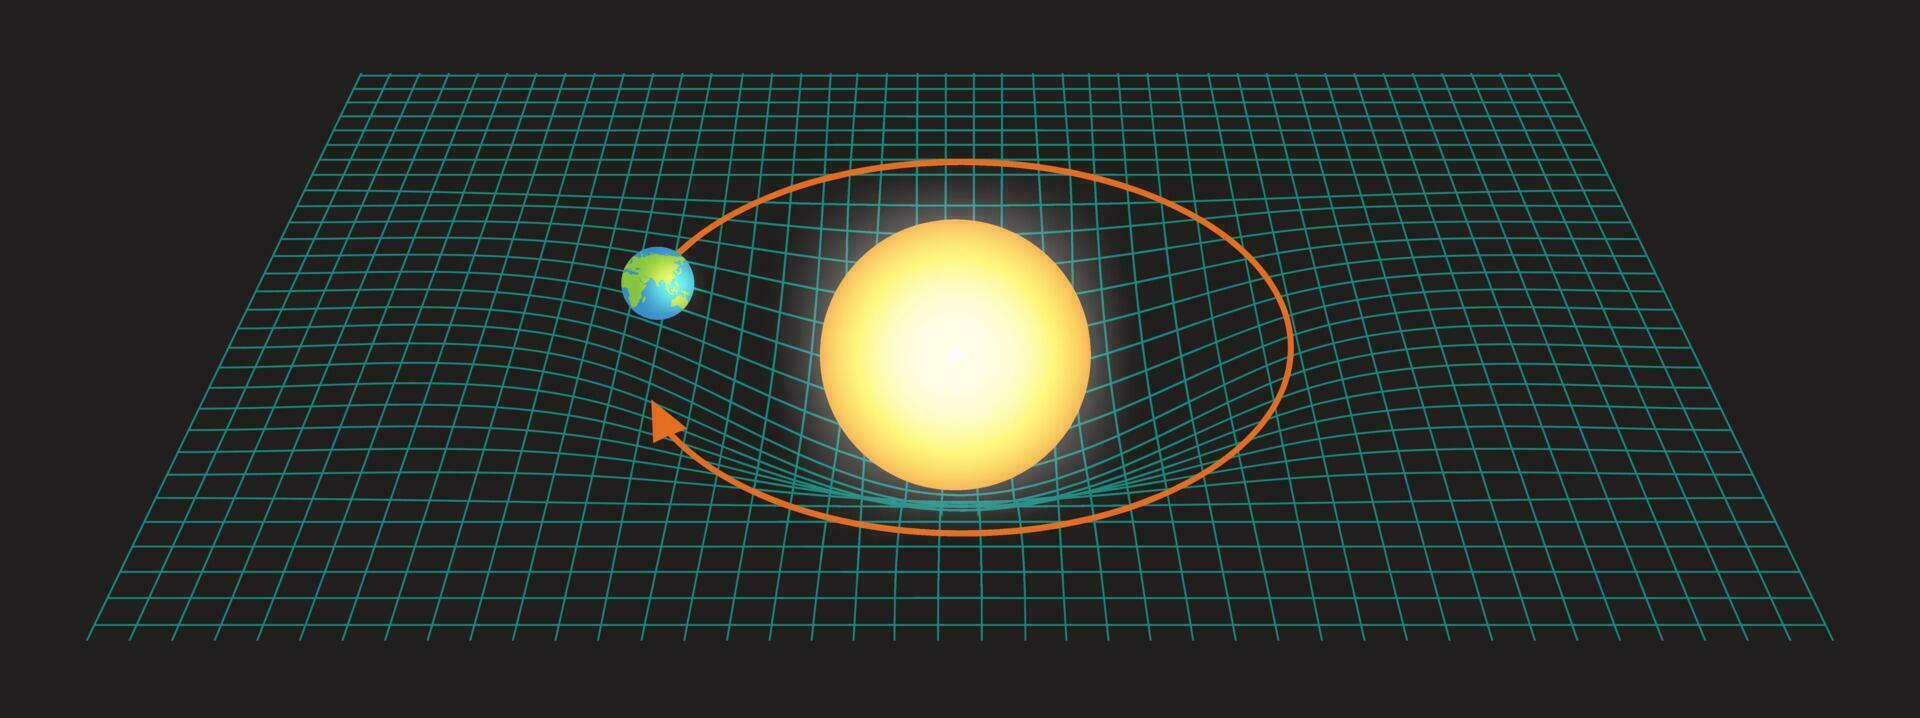 illustratie van zwaartekracht tussen aarde en zon in ruimte tijd vector